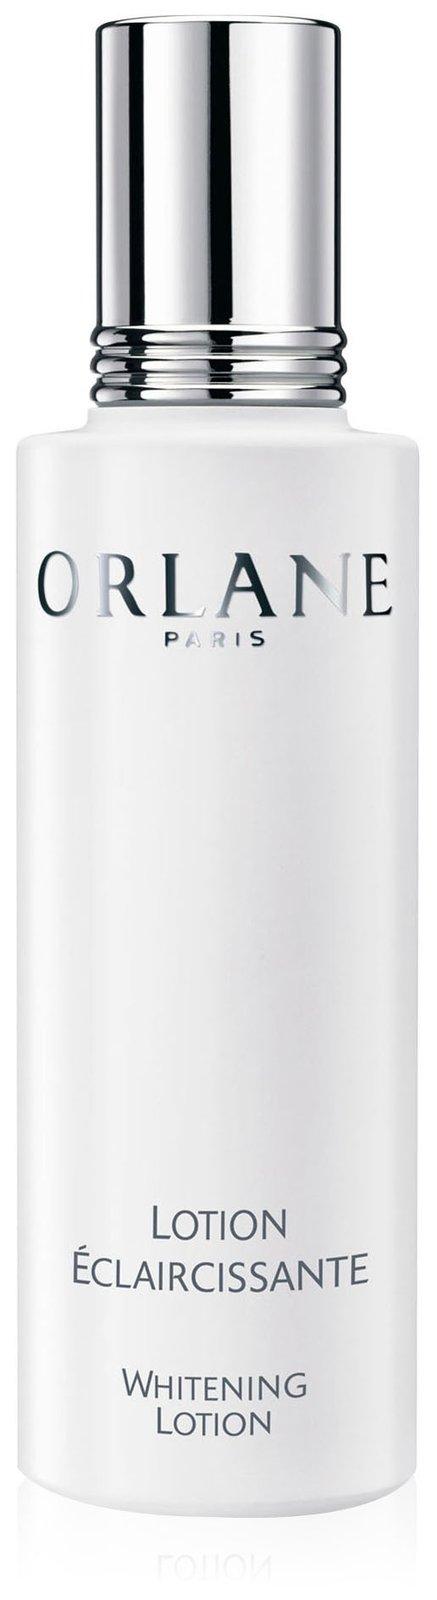 Orlane Paris Whitening Lotion